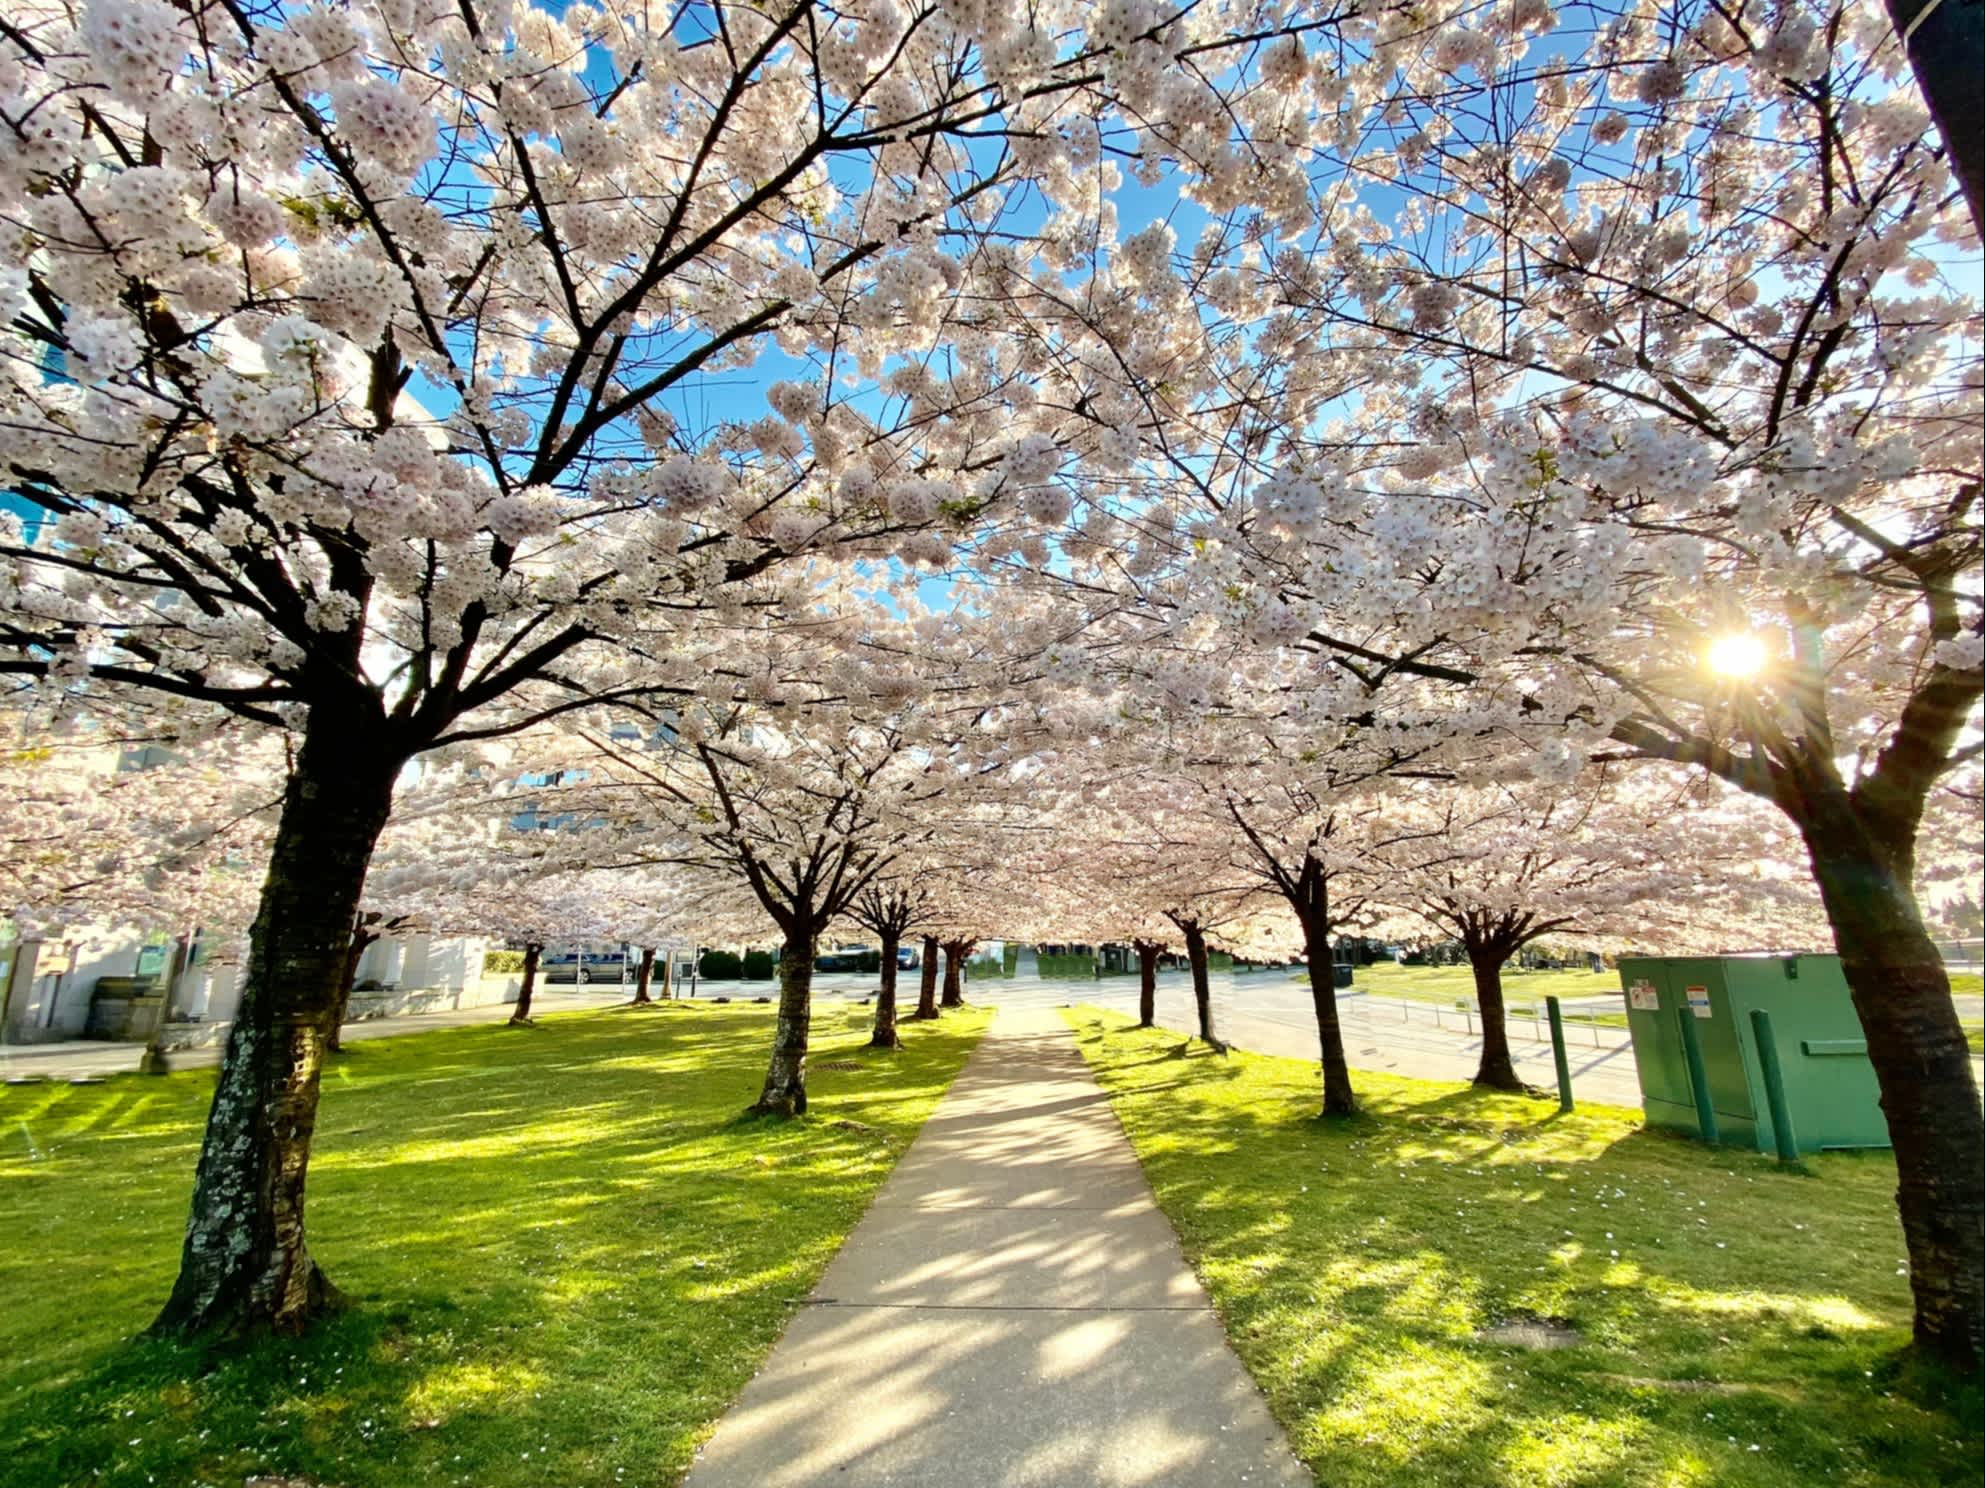 Blühende Kirschbäume in einem Park.